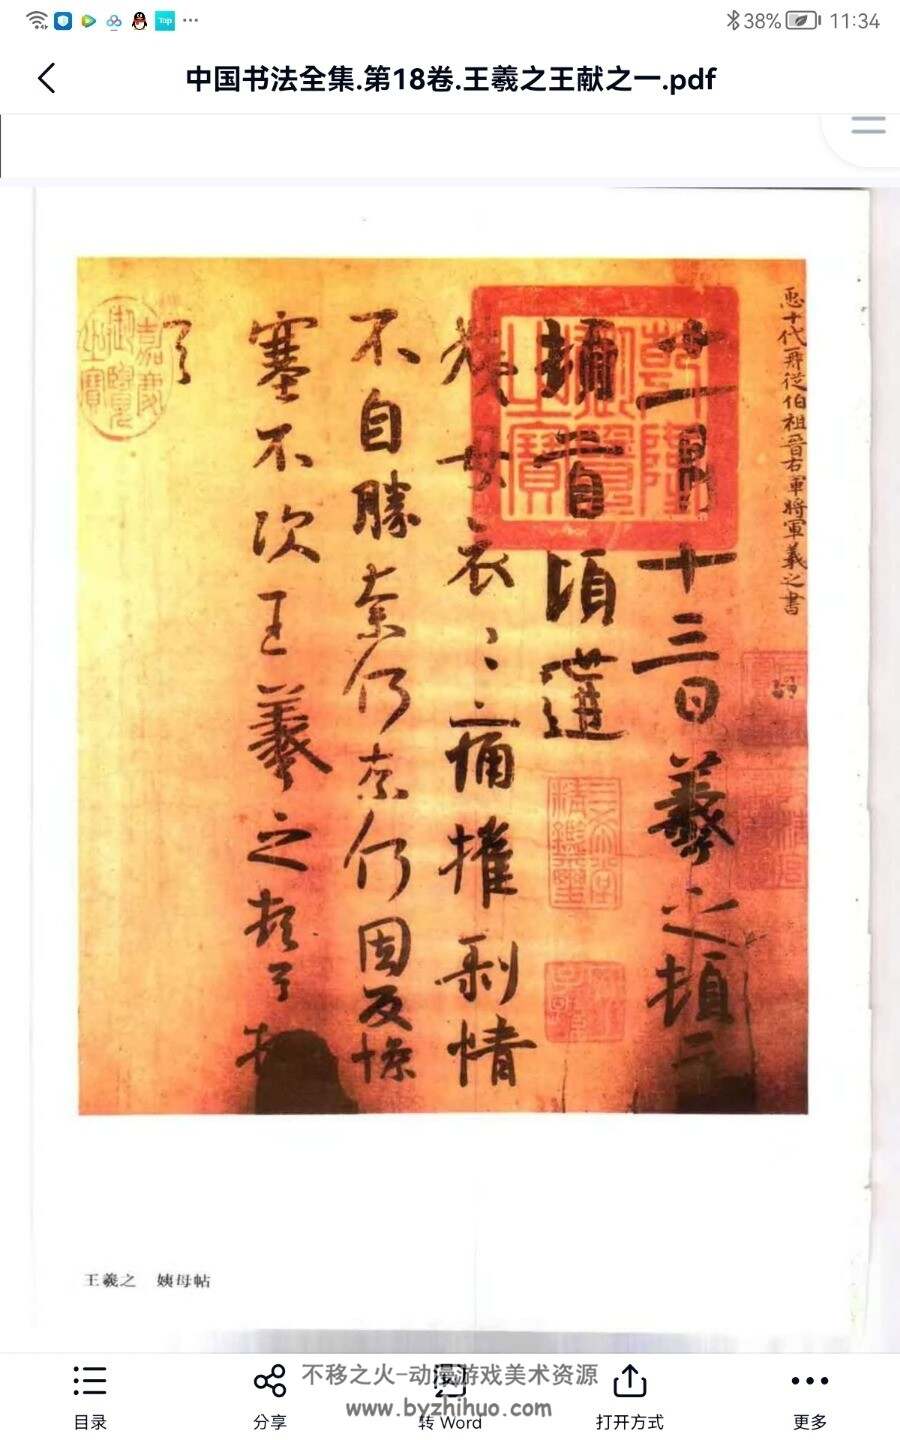 中国书法全集 第十九卷 王羲之和王献之 PDF格式 百度网盘下载